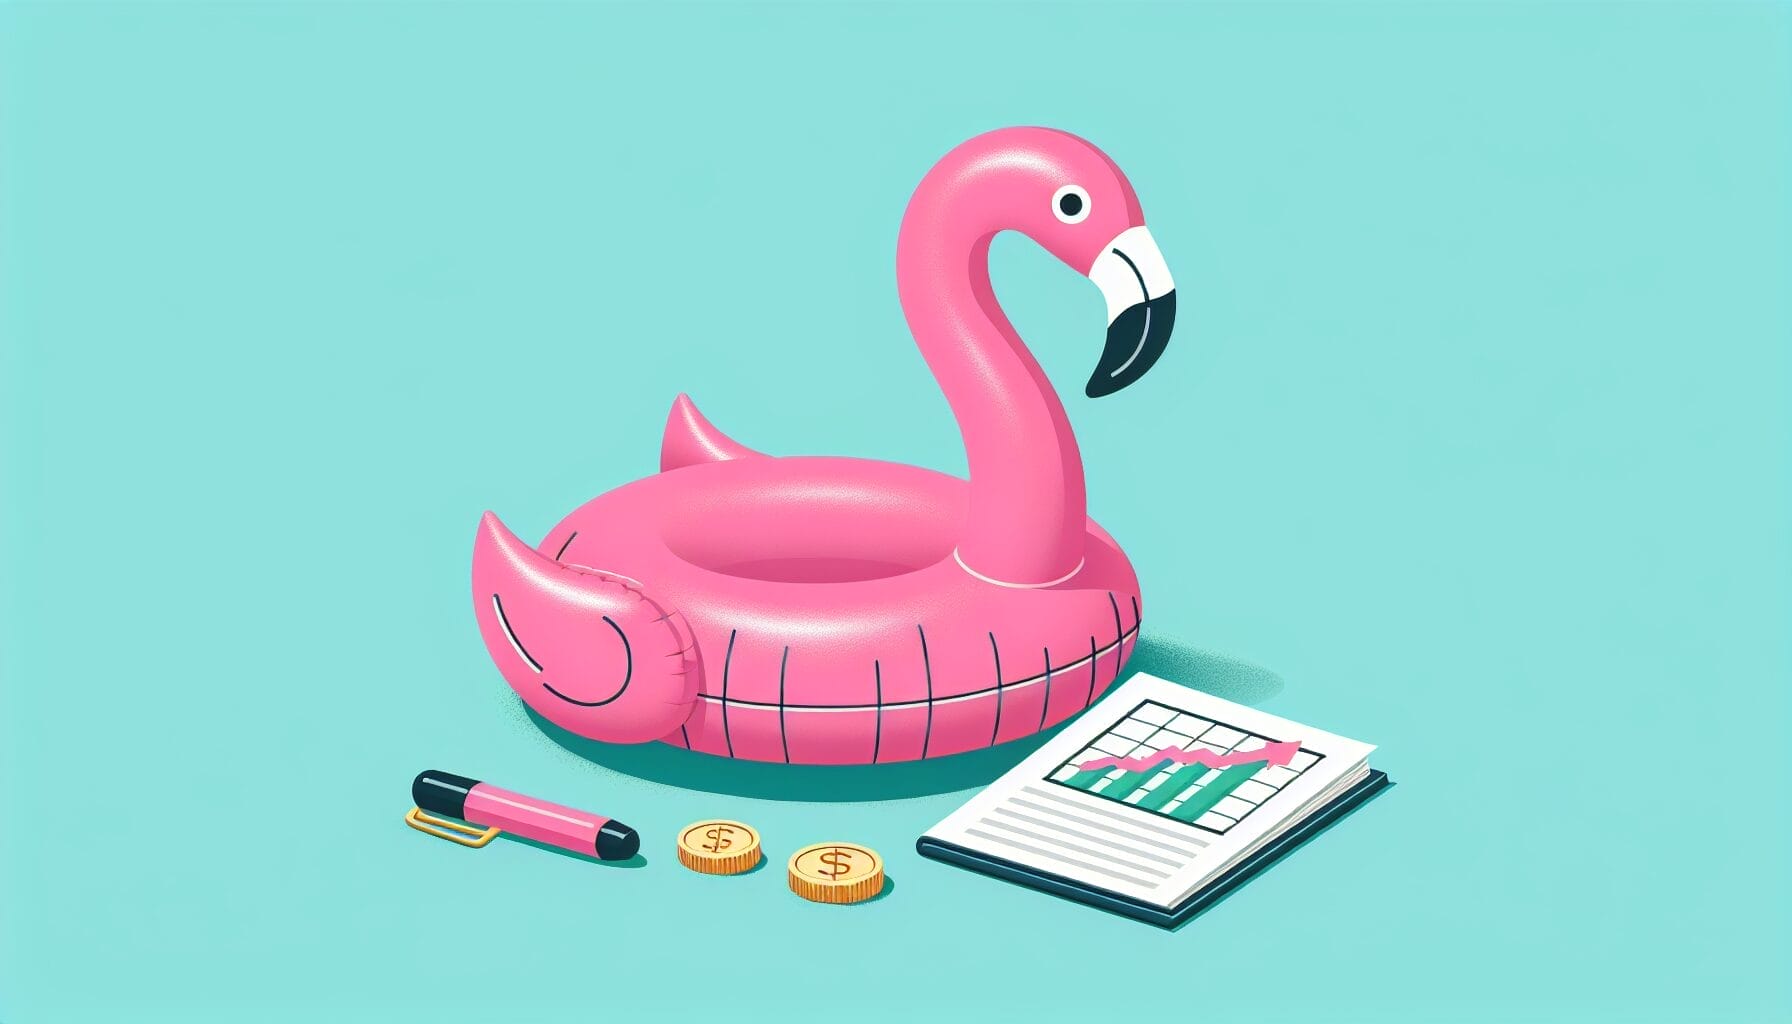 Flamingo Mopy betrachtet eine symbolische Aktie mit Kursentwicklung